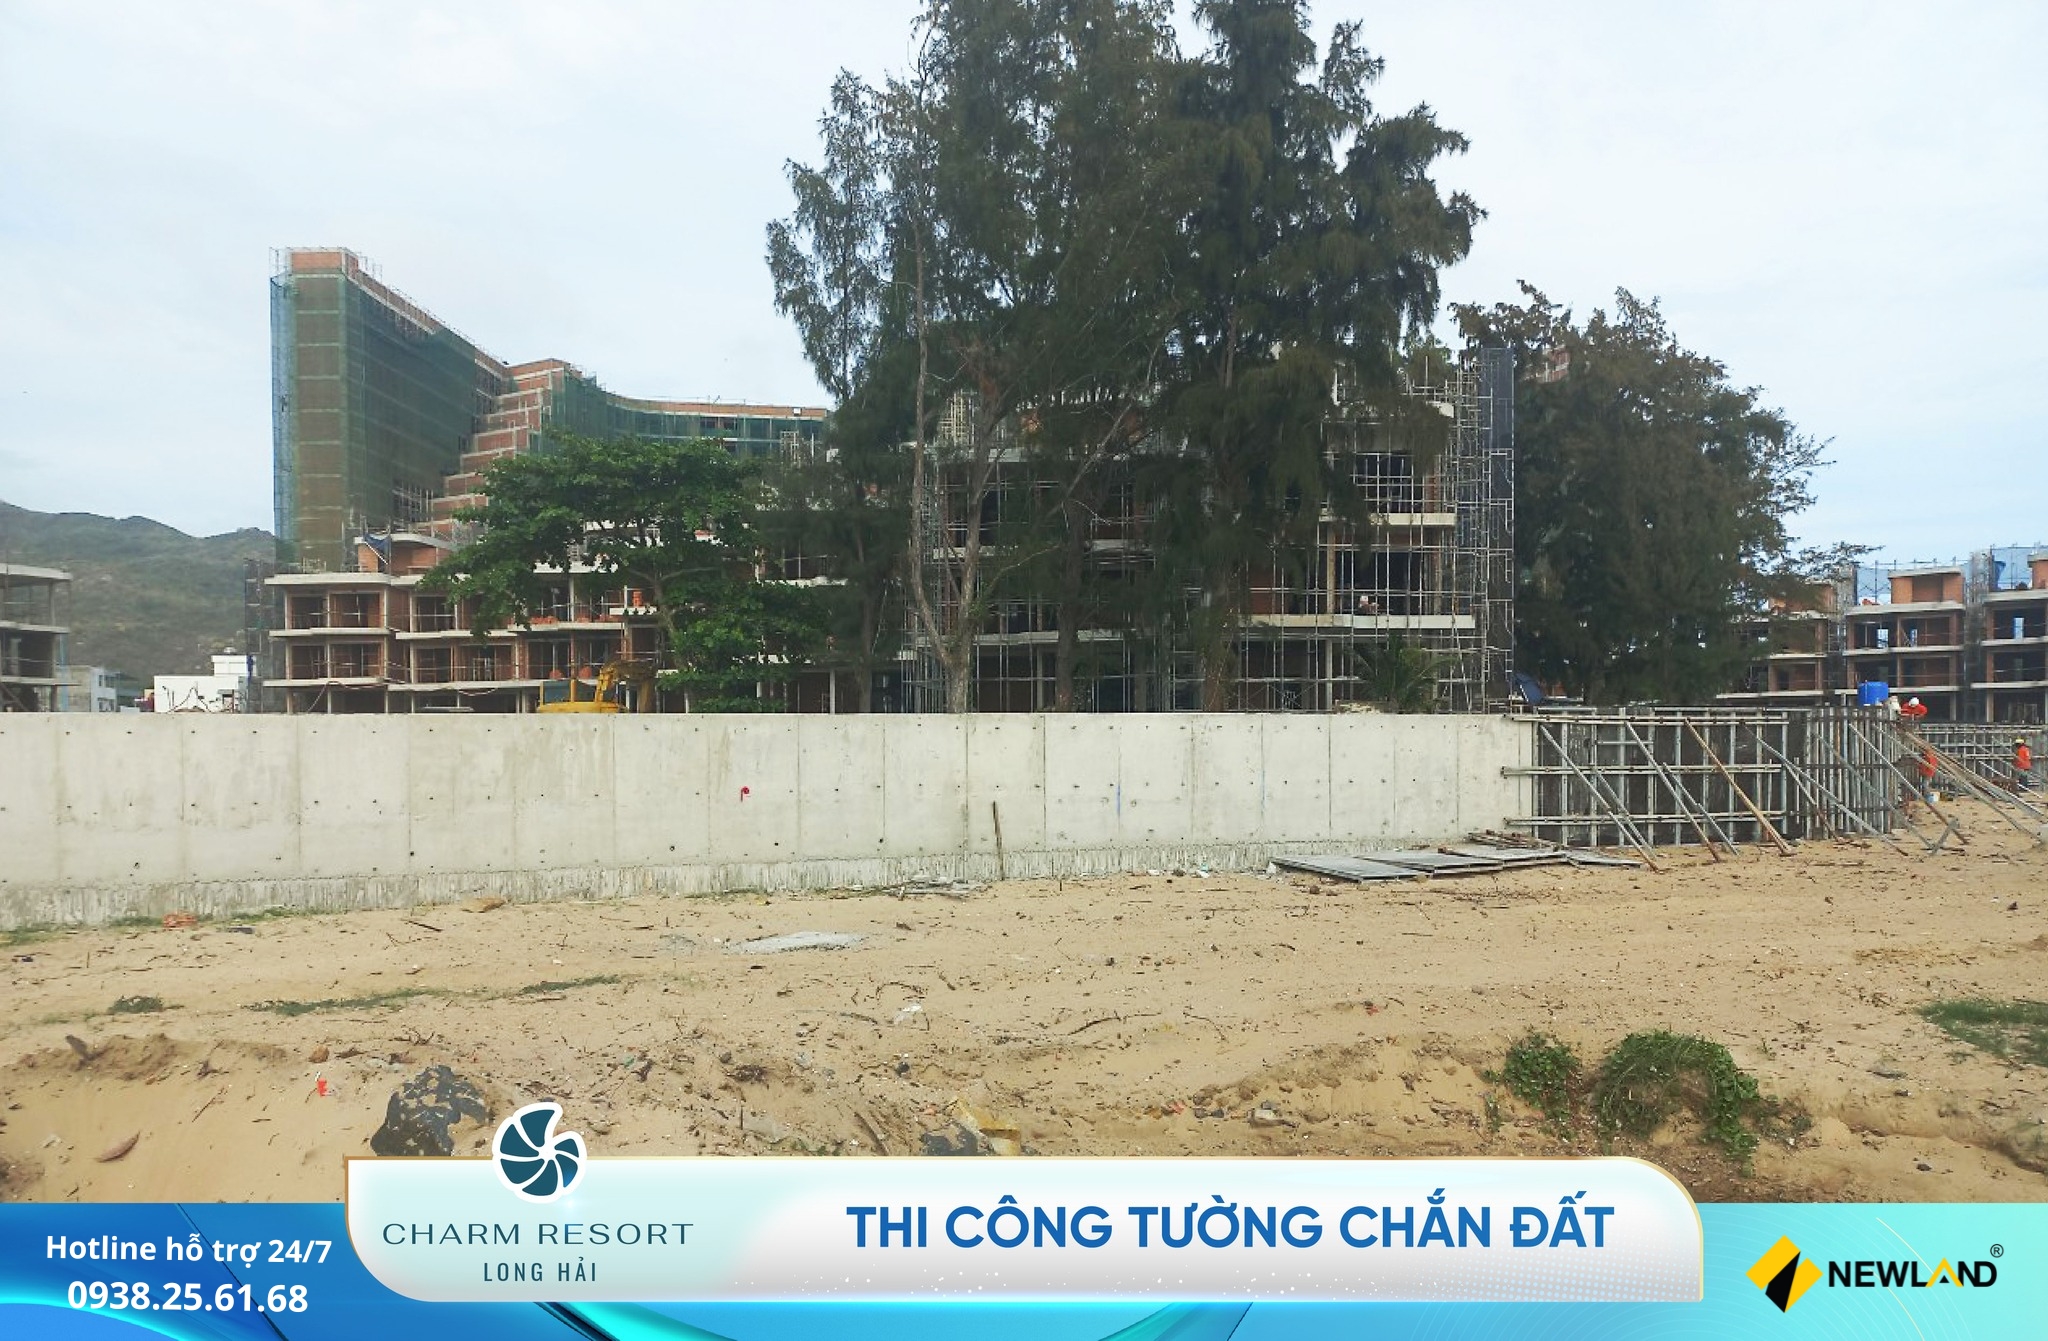 Charm Resort Long Hải sẽ được hoàn thiện và bàn giao nhà đến khách hàng theo đúng cam kết.